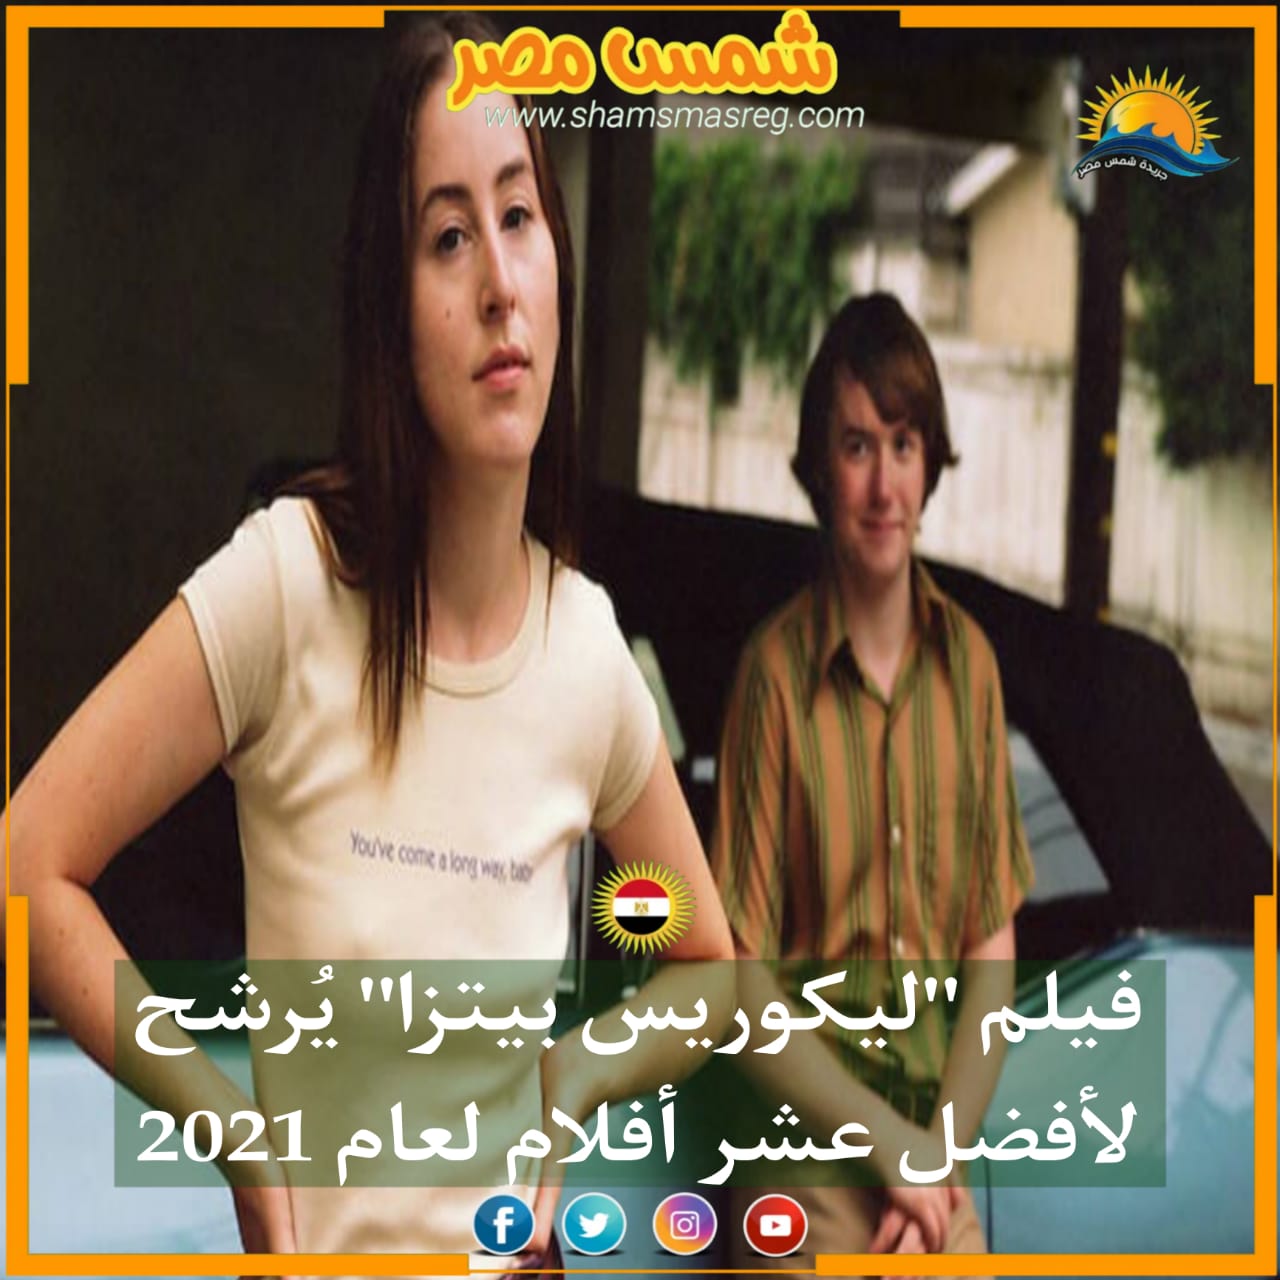 |شمس مصر|.. فيلم "ليكوريس بيتزا" يُرشح لأفضل عشر أفلام لعام 2021